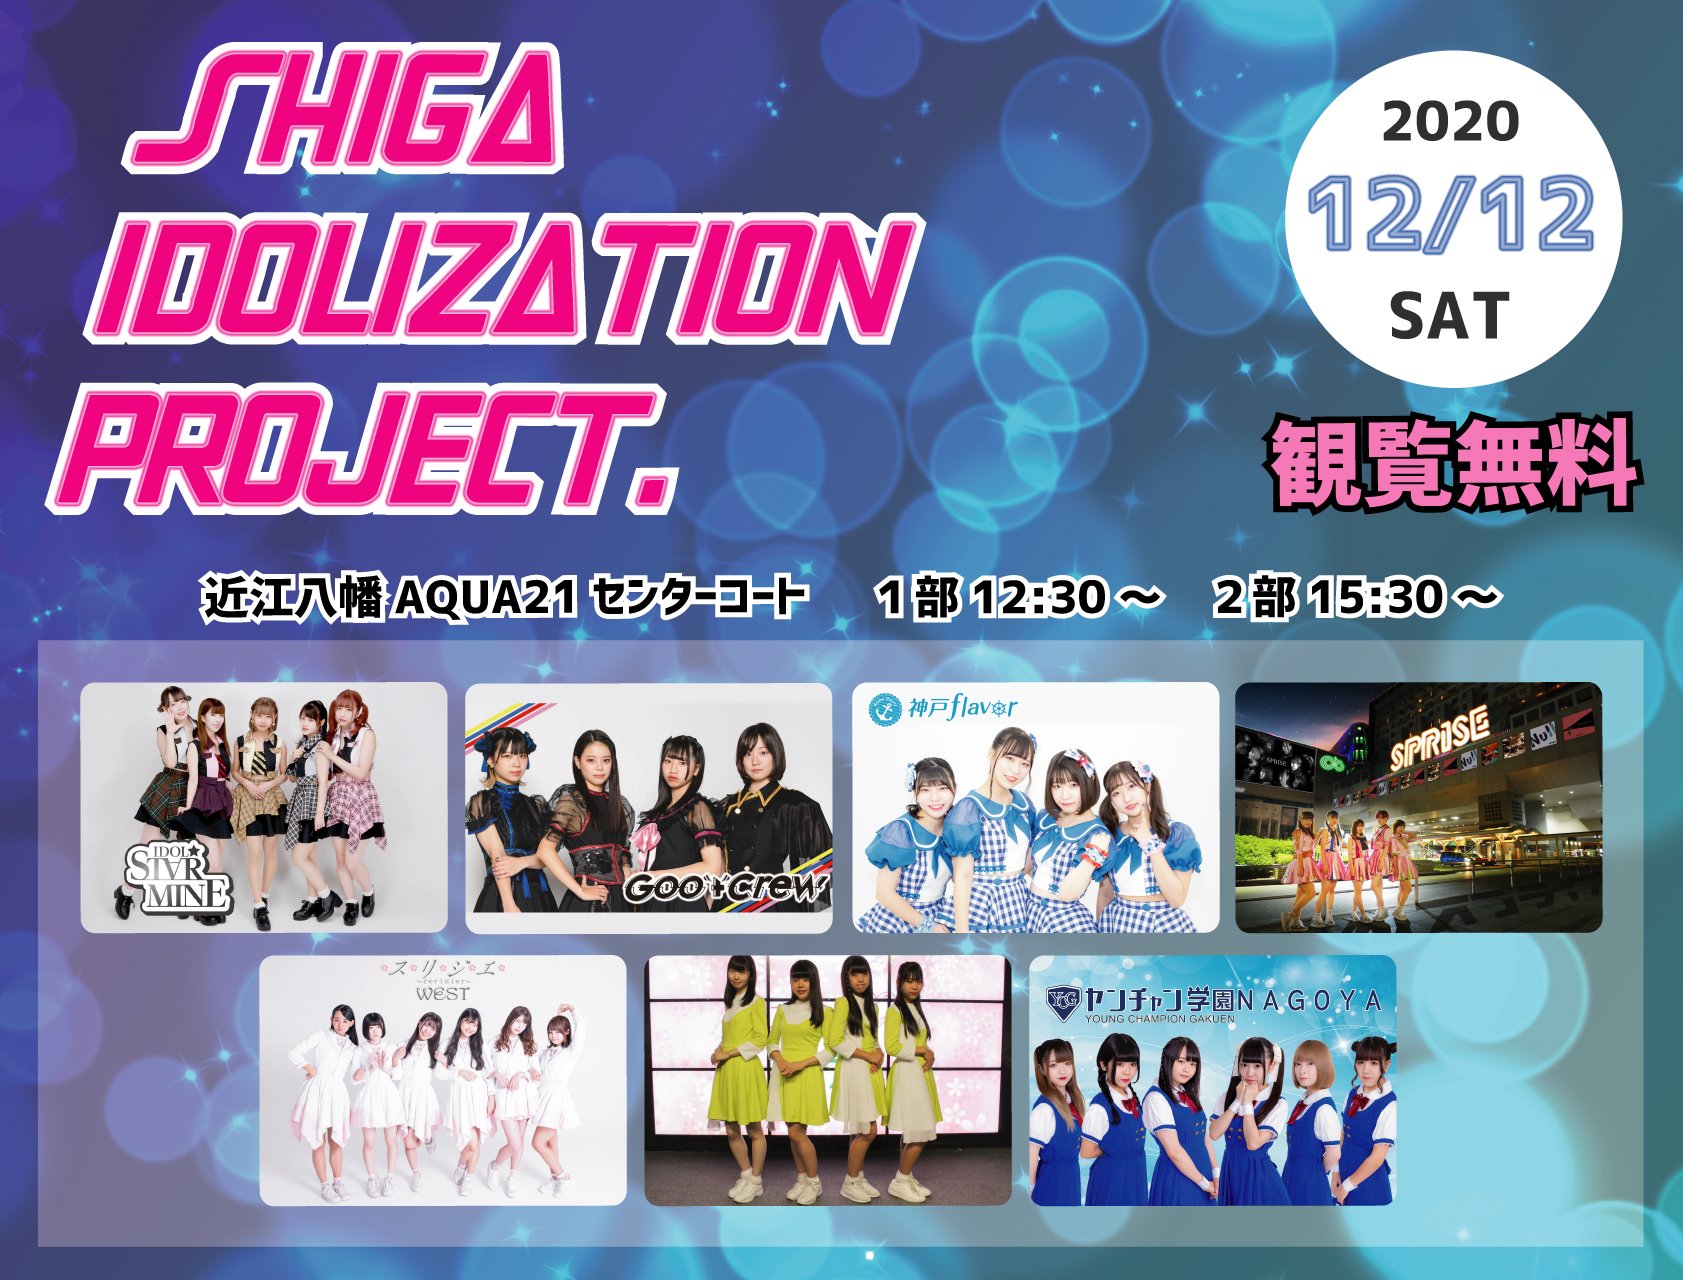 Shiga Idolization Project!